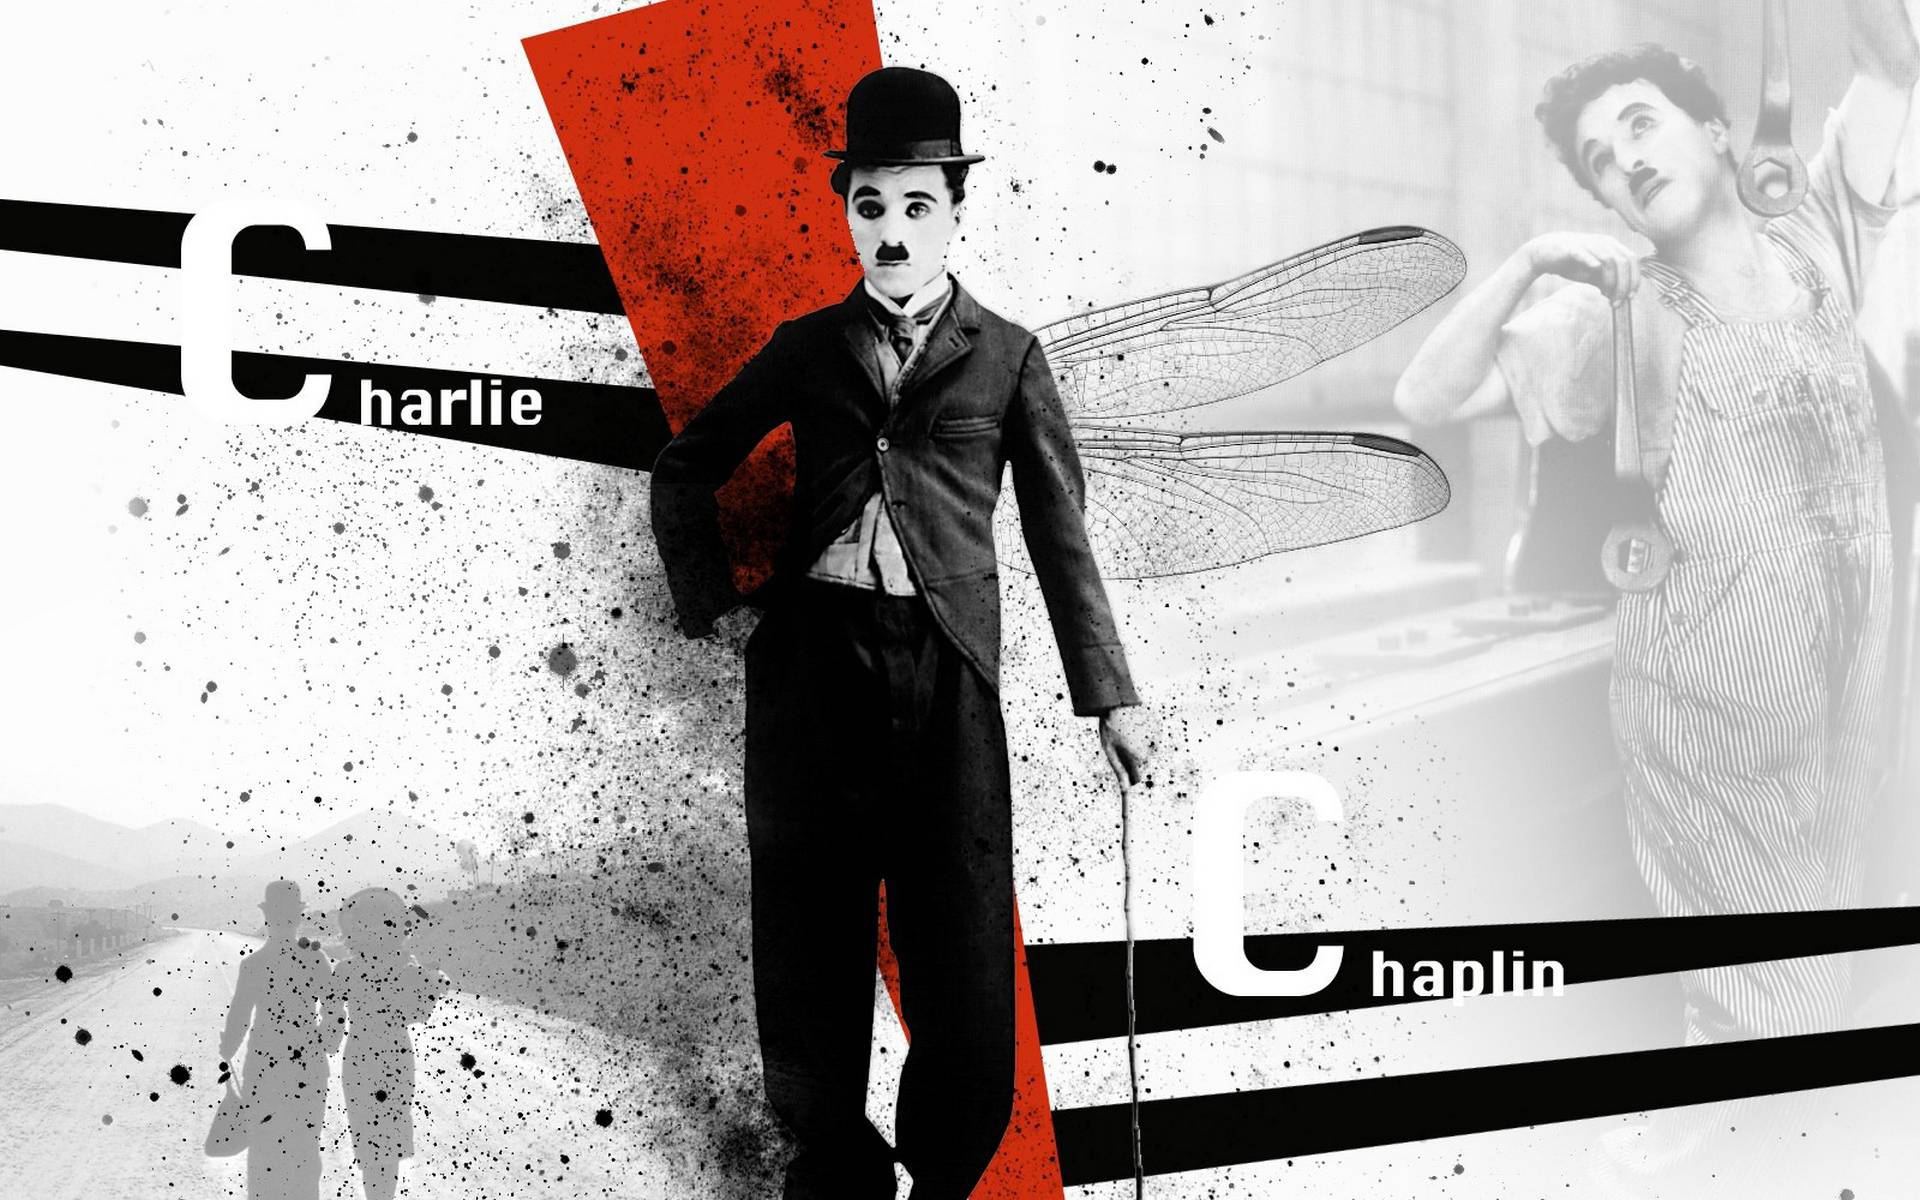 Wallpapers Charlie Chaplin actor comedian on the desktop